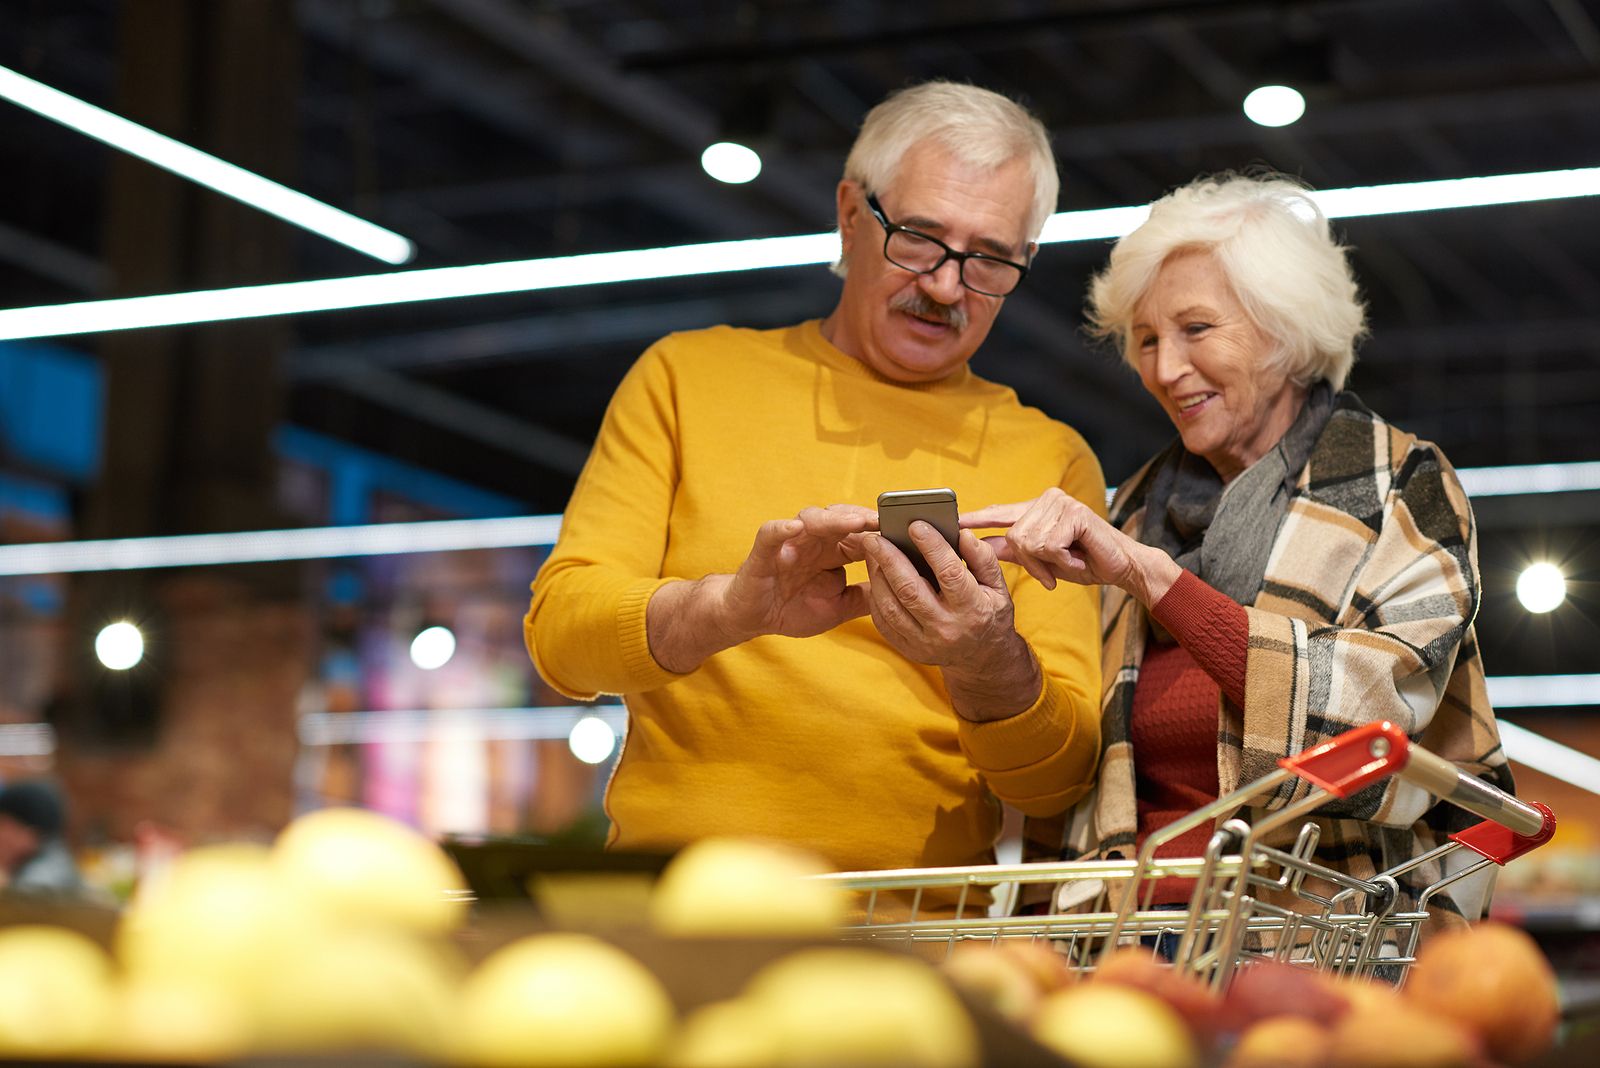 Supermercados del futuro: así se adaptan otros países a los clientes mayores